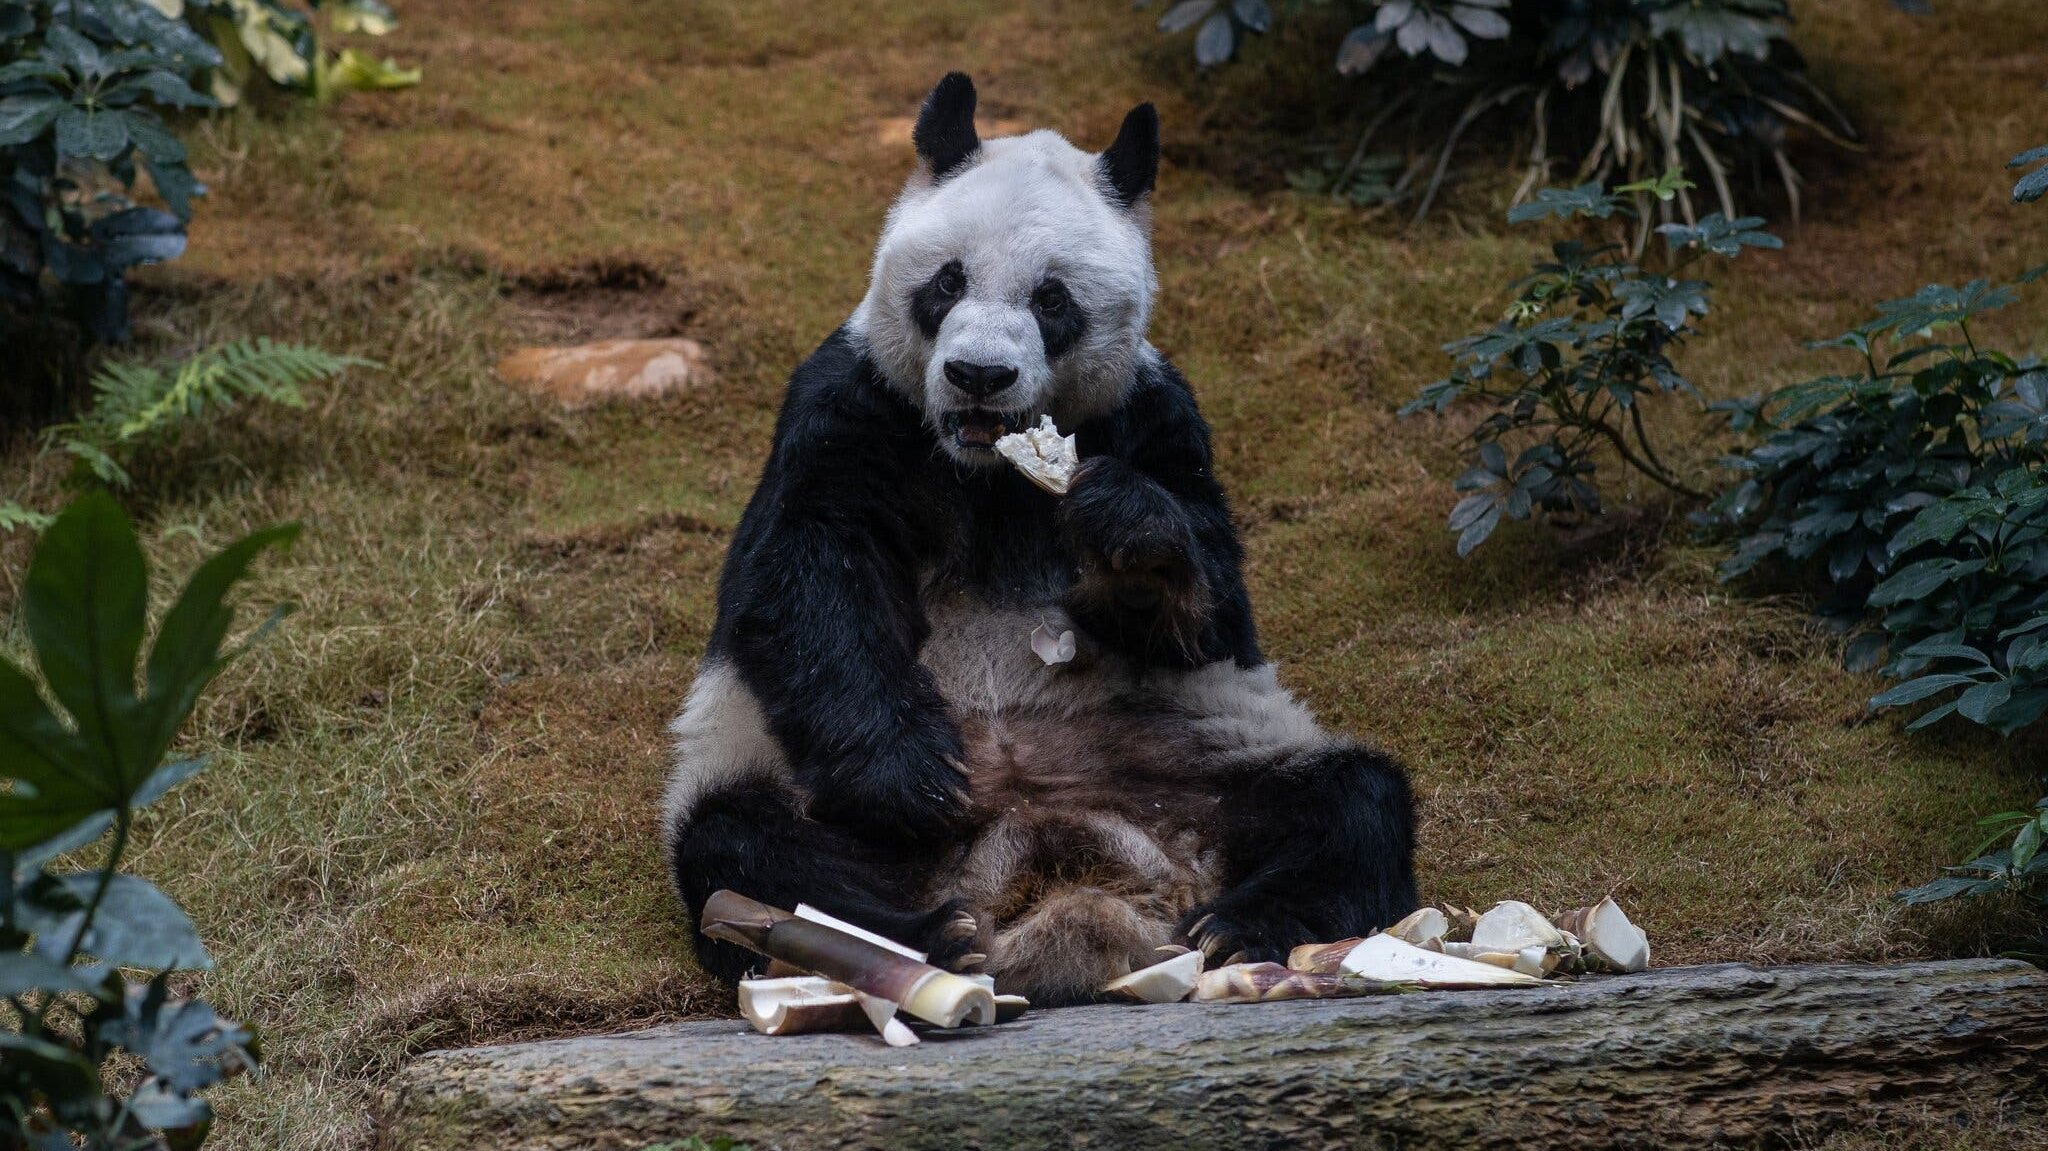 An An chegou a Hong Kong, em 1999, com uma companheira feminina, Jia Jia, que o Guinness World Records a classificou, em 2015, como o panda gigante mais antigo em cativeiro